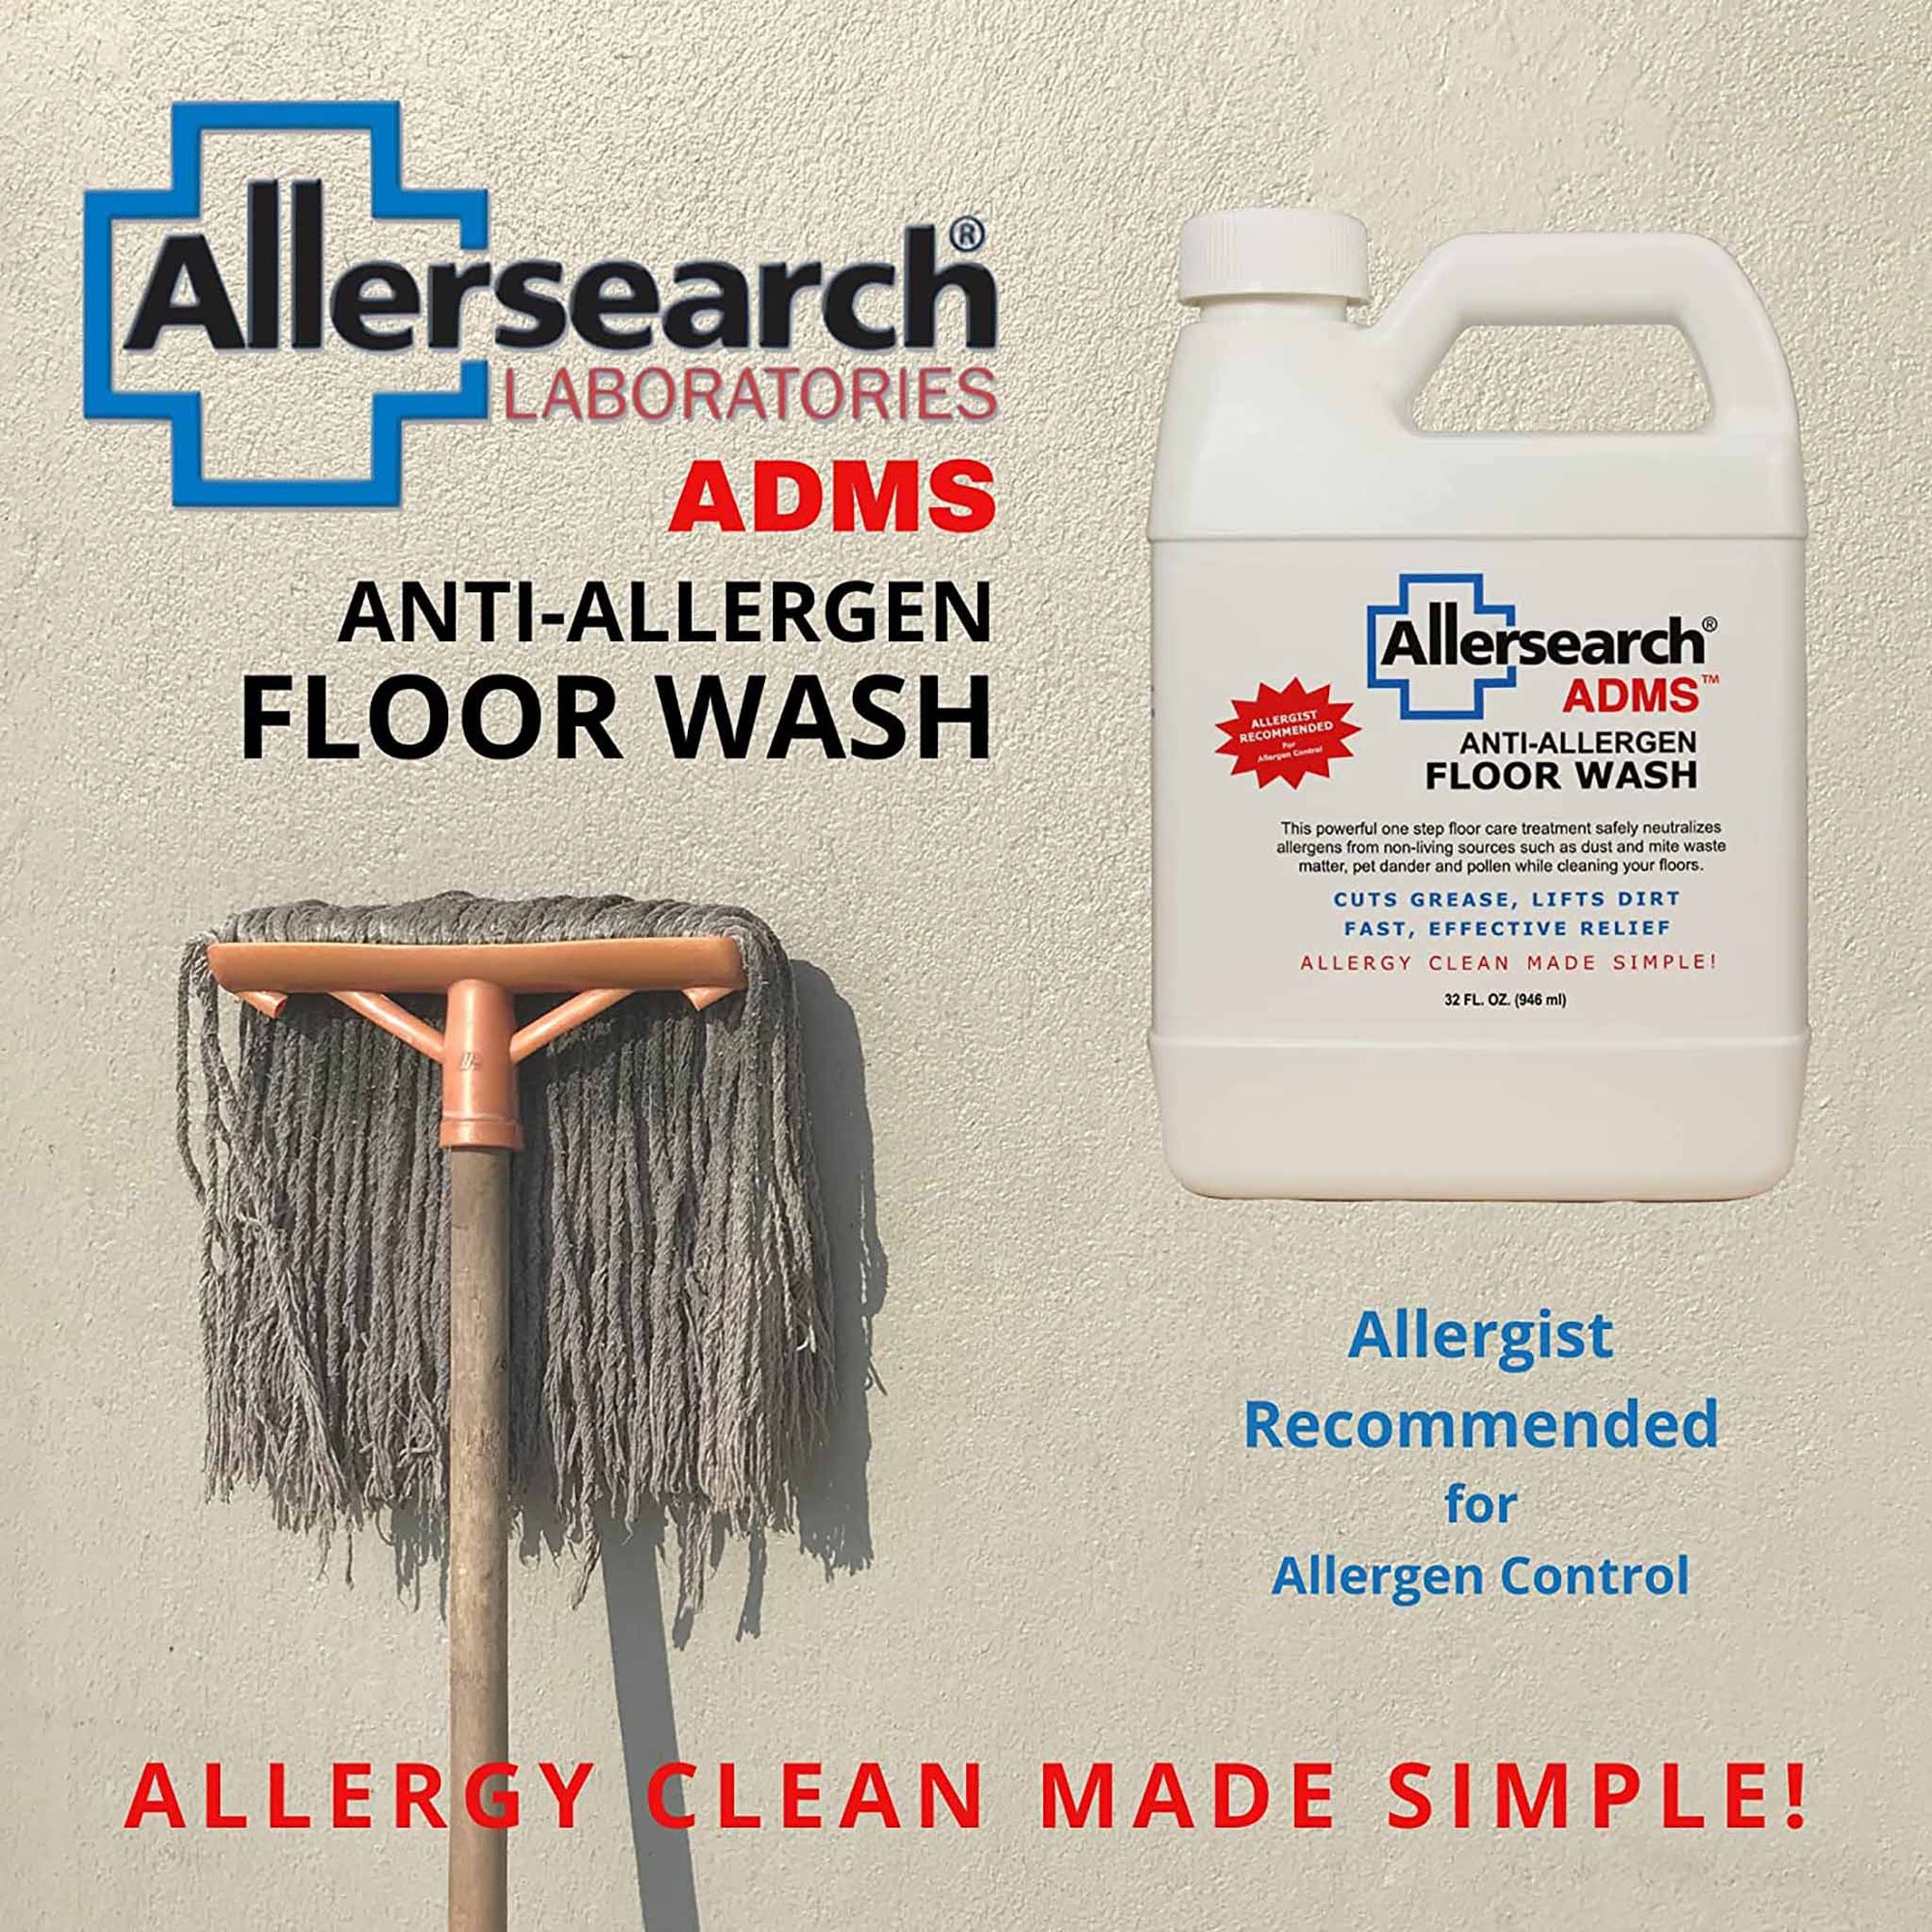 Allersearch ADMS™ Anti-Allergen Floor Wash safely neutralizes allergens 